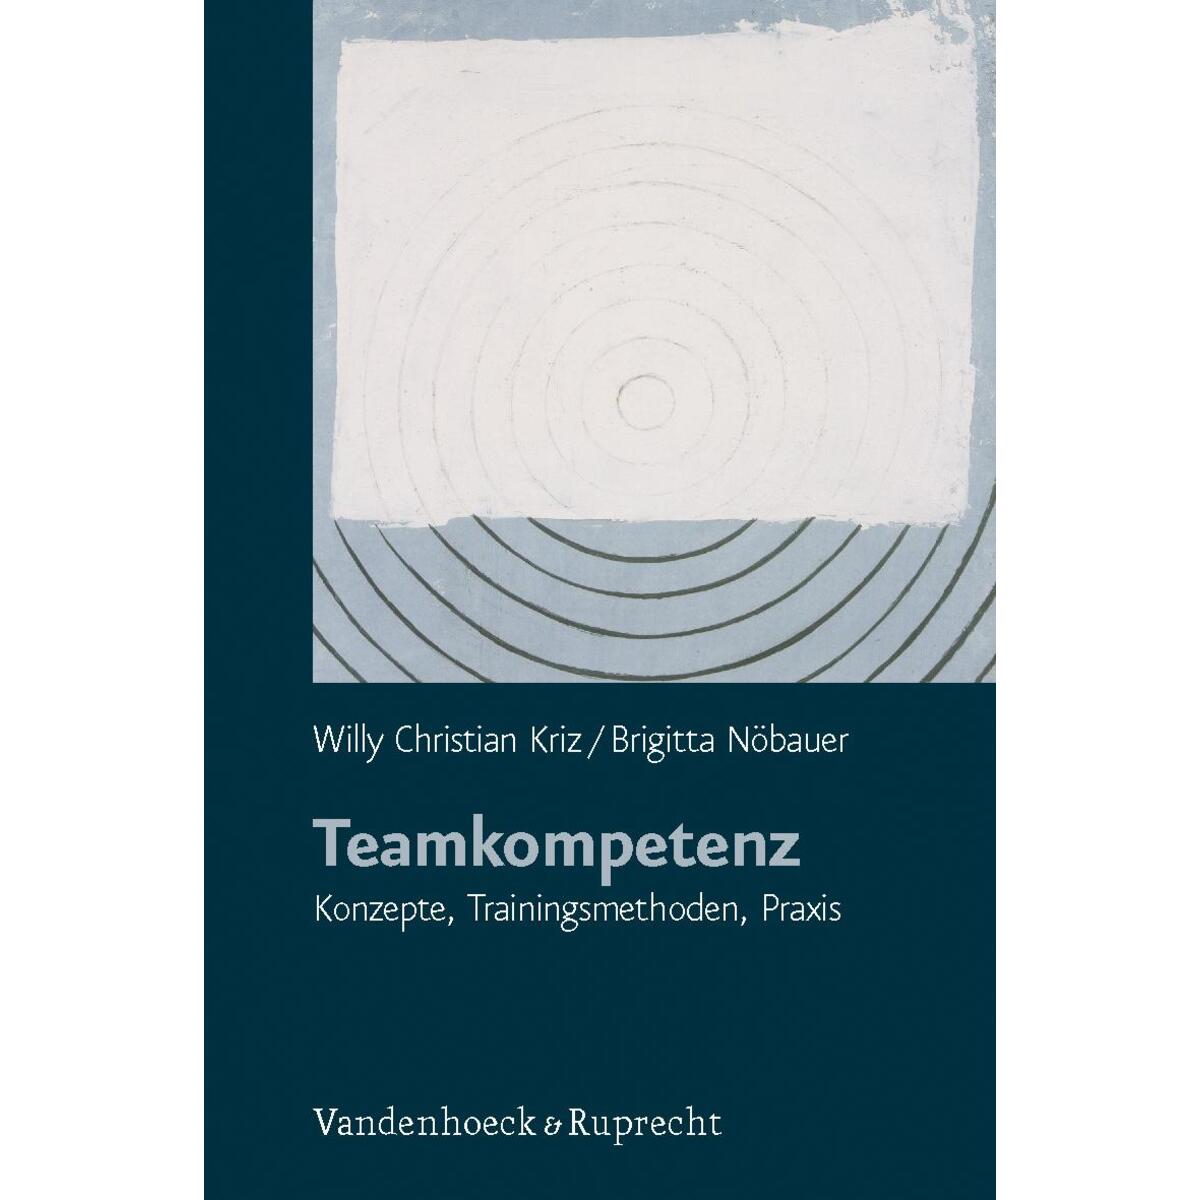 Teamkompetenz von Vandenhoeck + Ruprecht